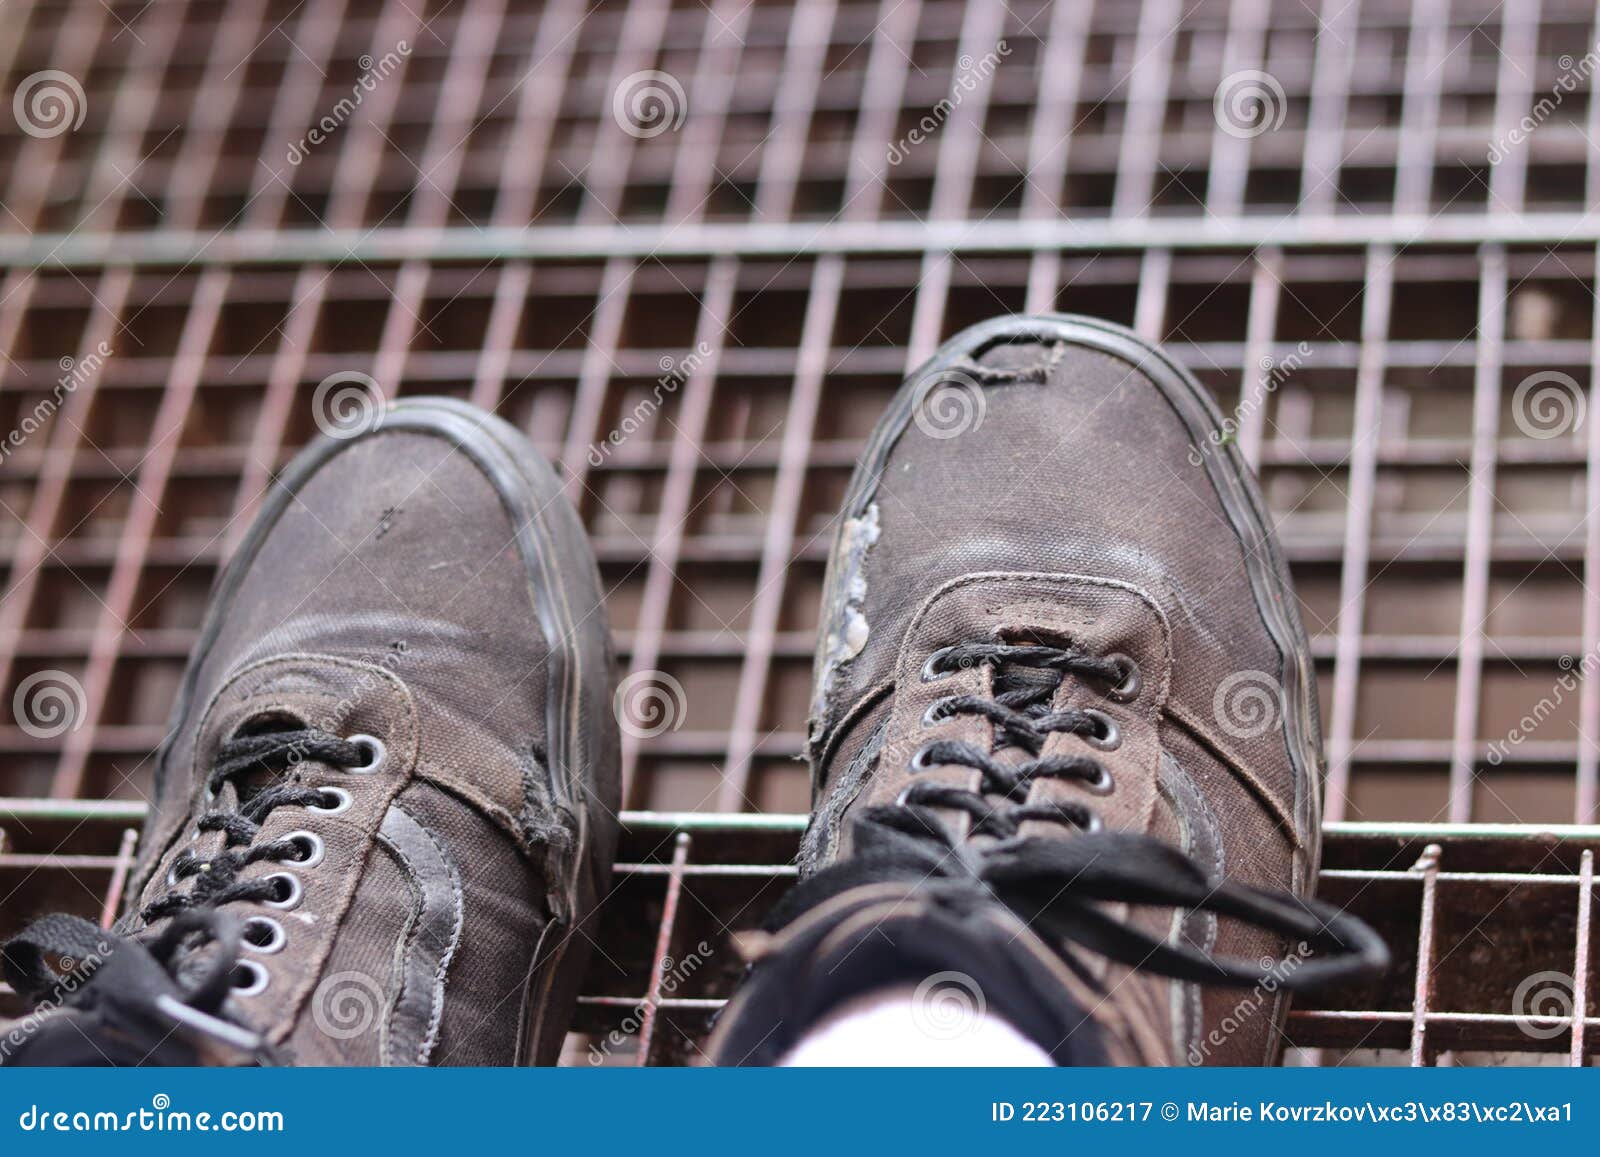 мужские порванные удобные кроссовки с промышленной текстурой на заднем плане Стоковое Изображение - изображение насчитывающей скульптура, люди: 223106217